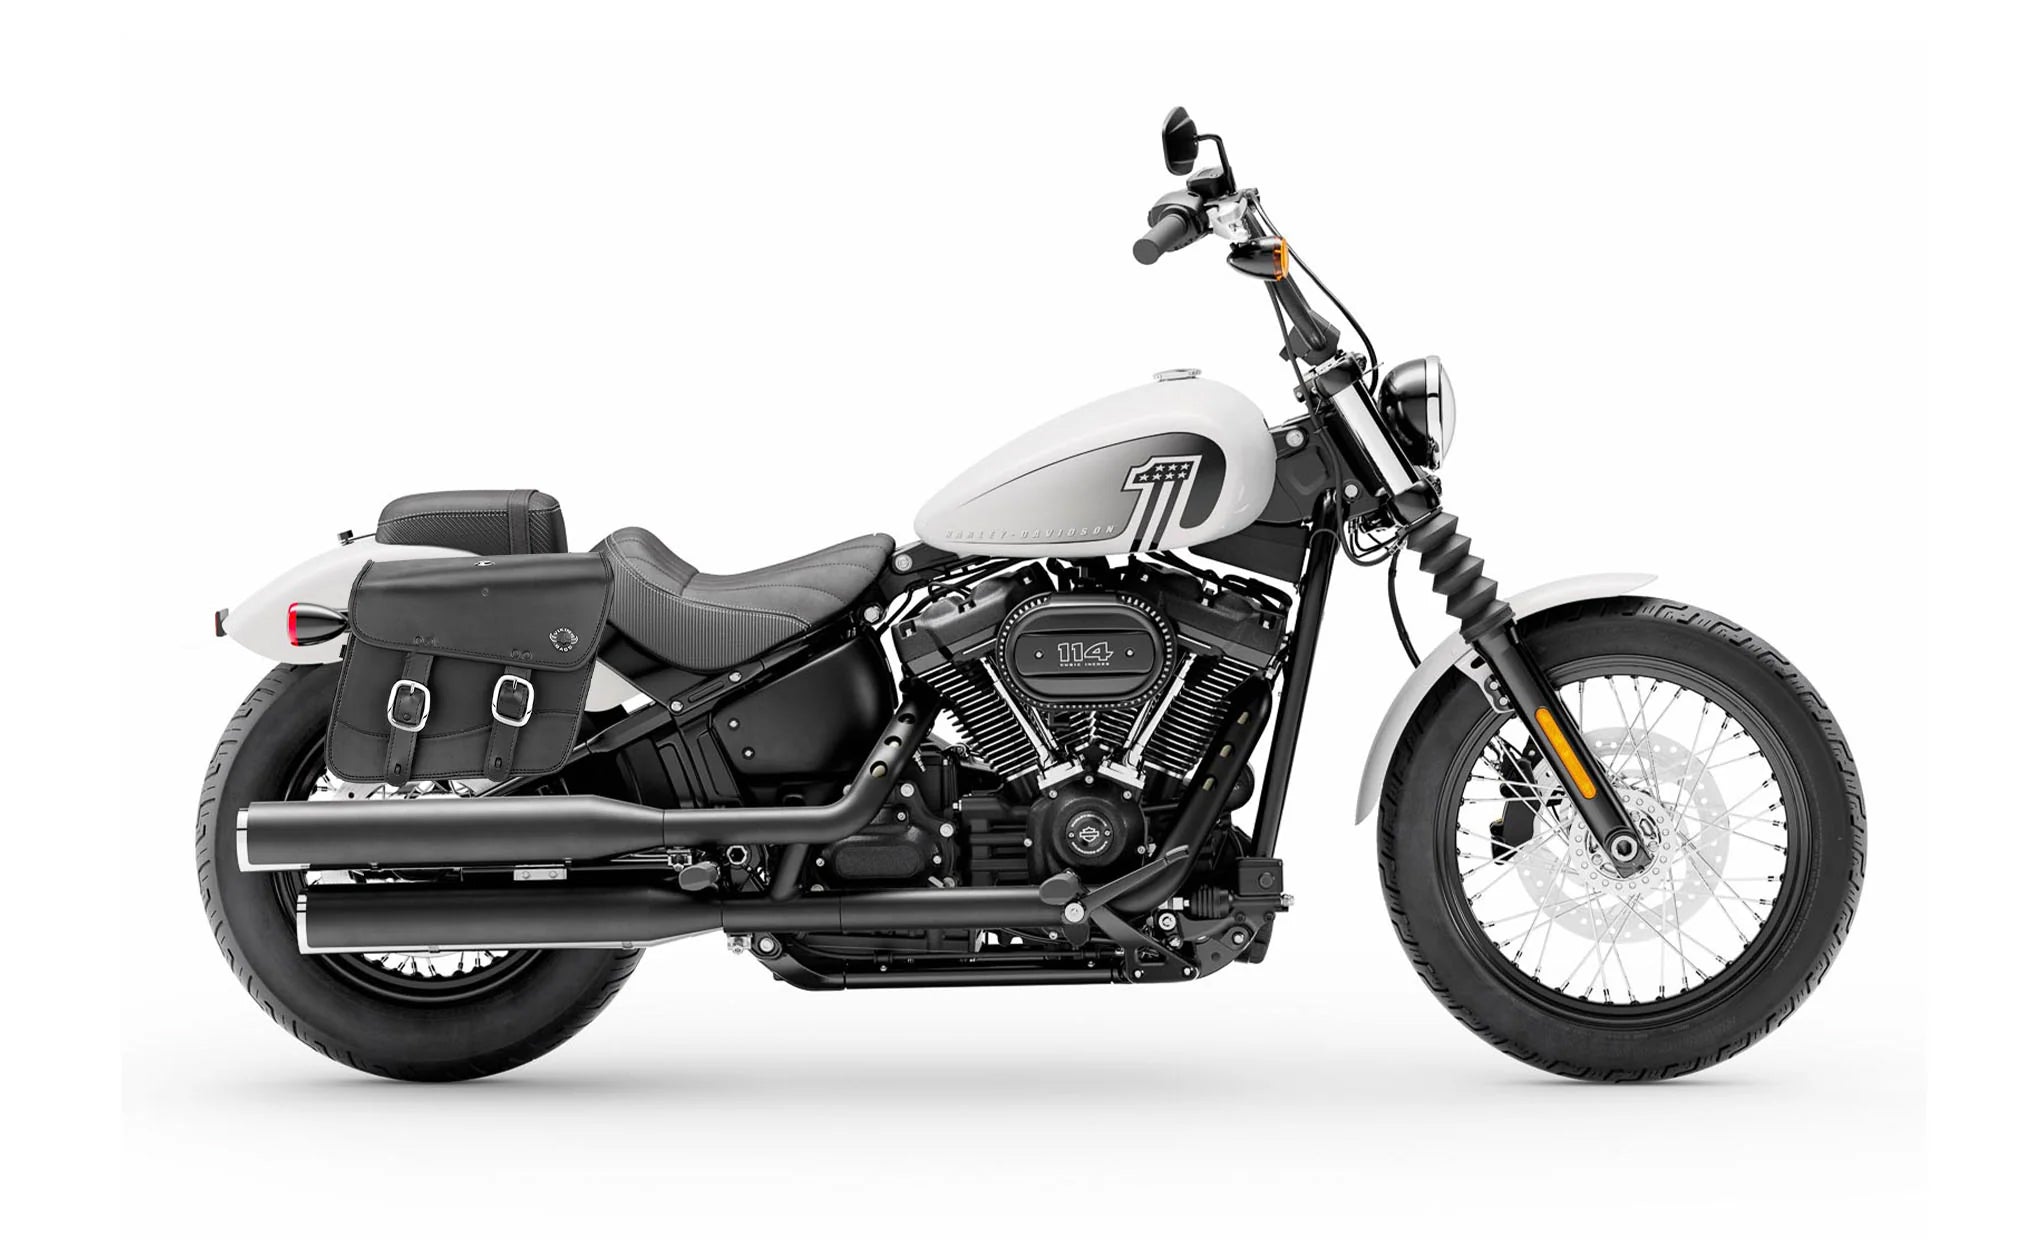 Viking Thor Medium Leather Motorcycle Saddlebags For Harley Davidson Softail Street Bob Fxbb on Bike Photo @expand